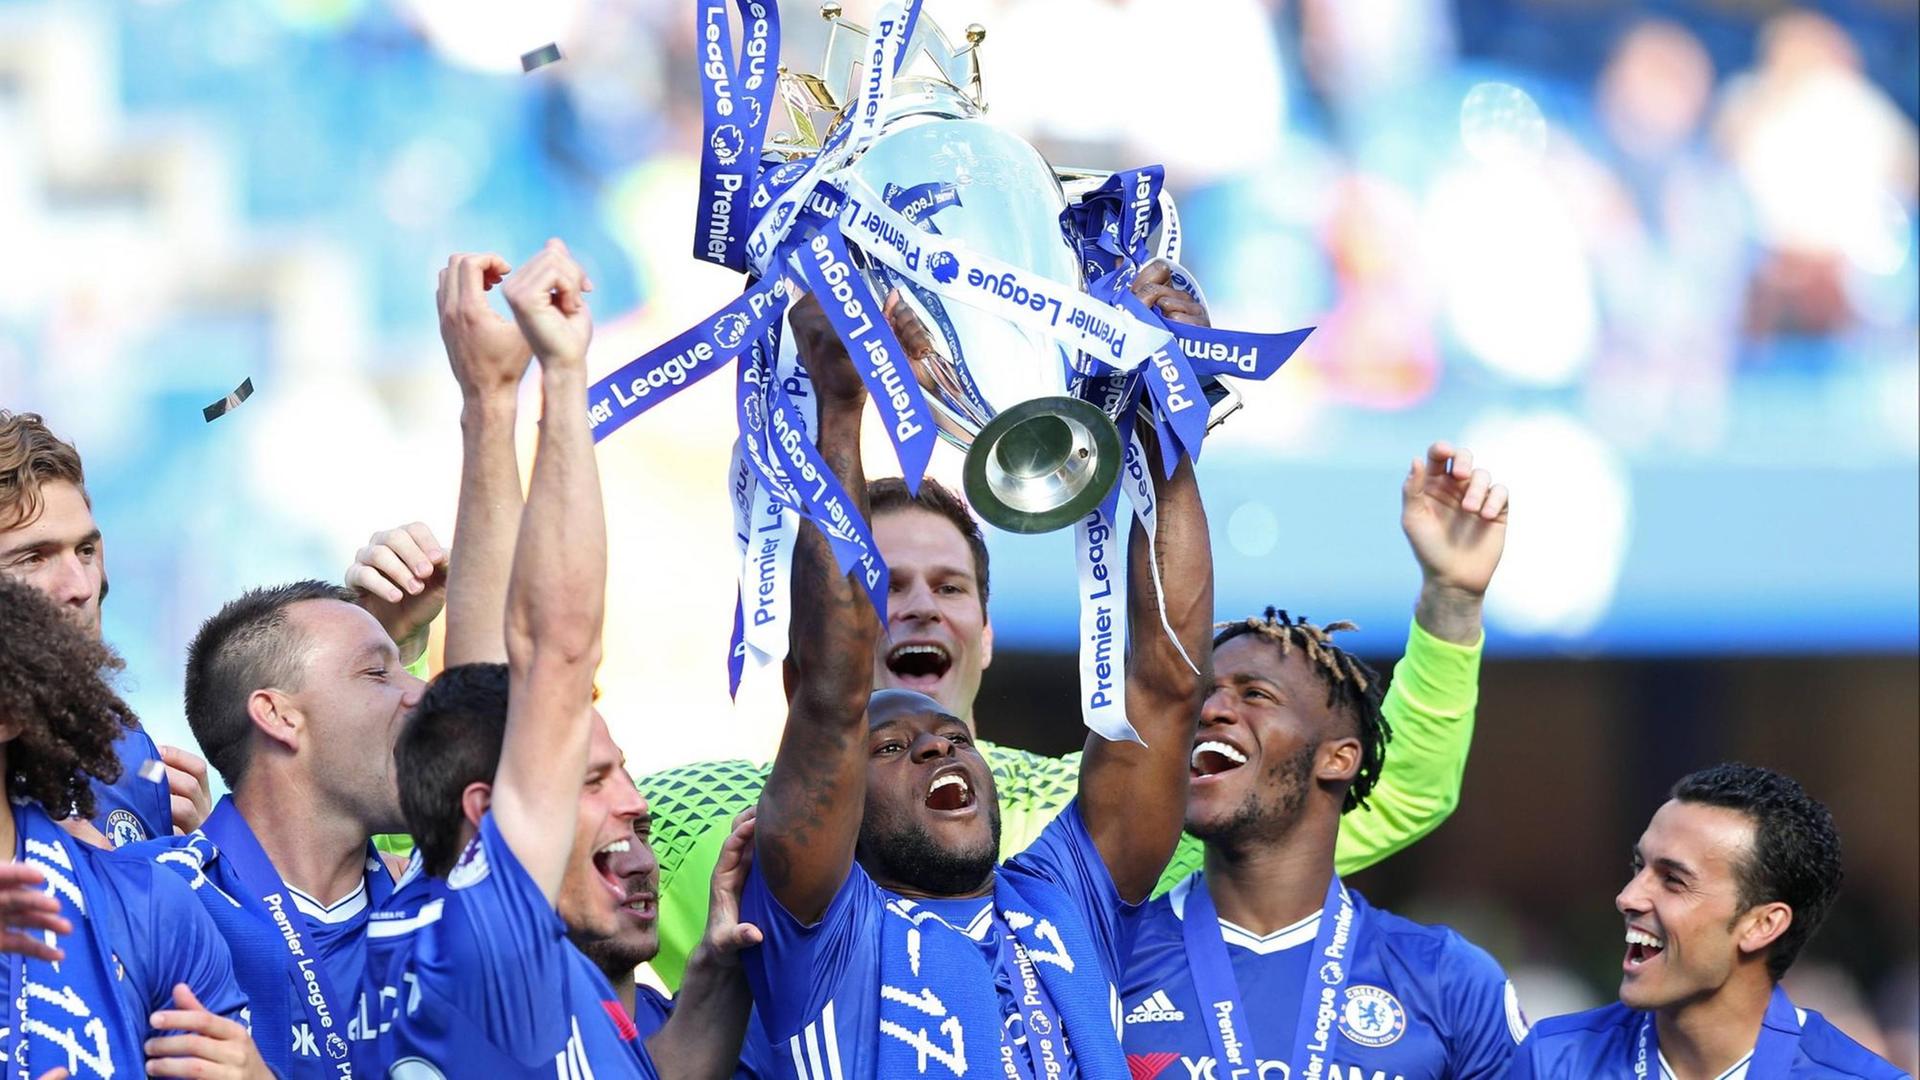 Spieler des FC Chelsea feiern den Gewinn der englischen Fußball-Meisterschaft. Sie halten den Pokal in die Höhe und jubeln.